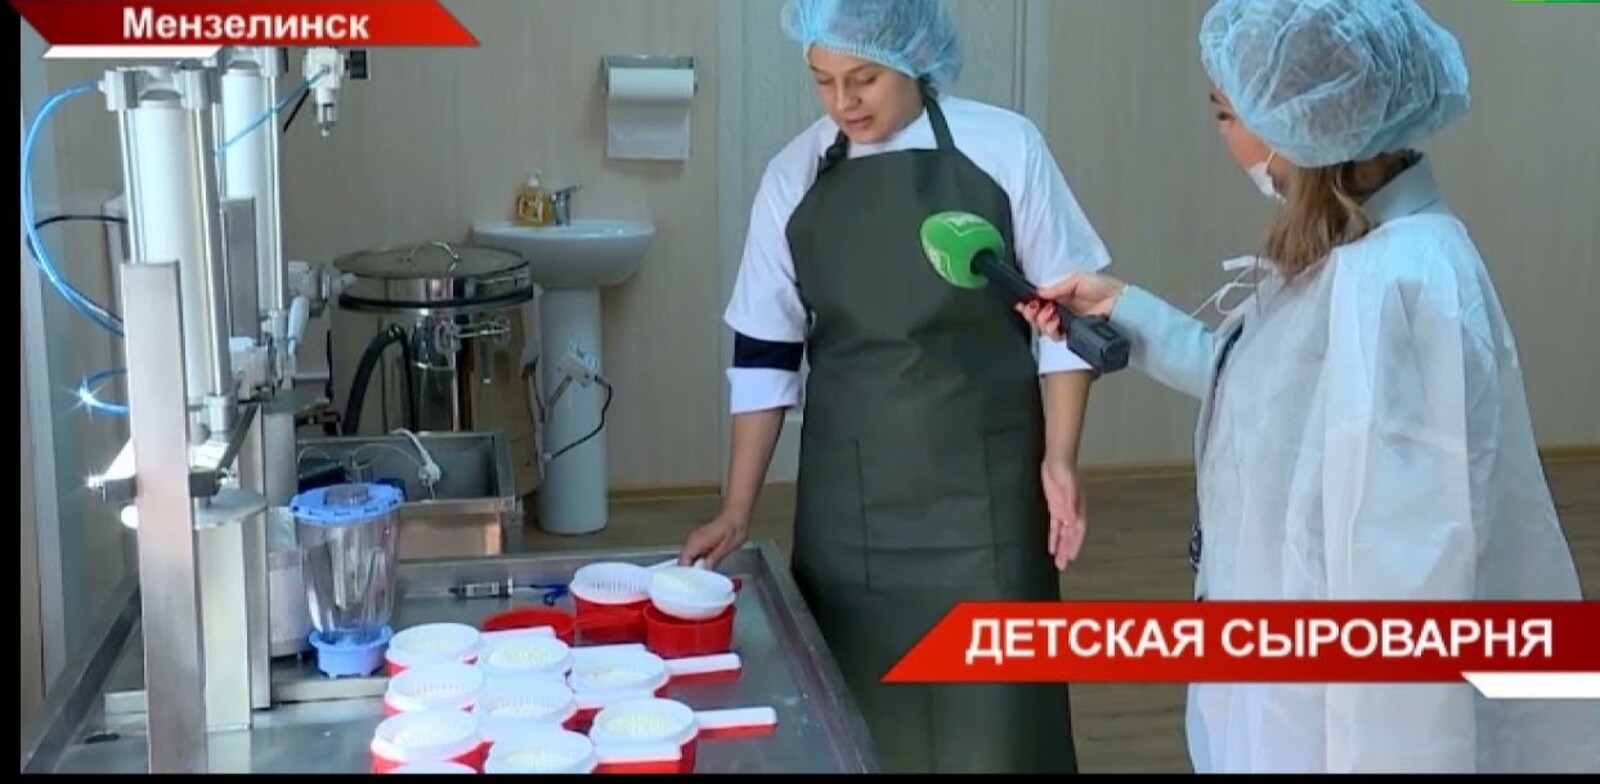 Юные сыровары Татарстана впервые провели дегустацию своей продукции